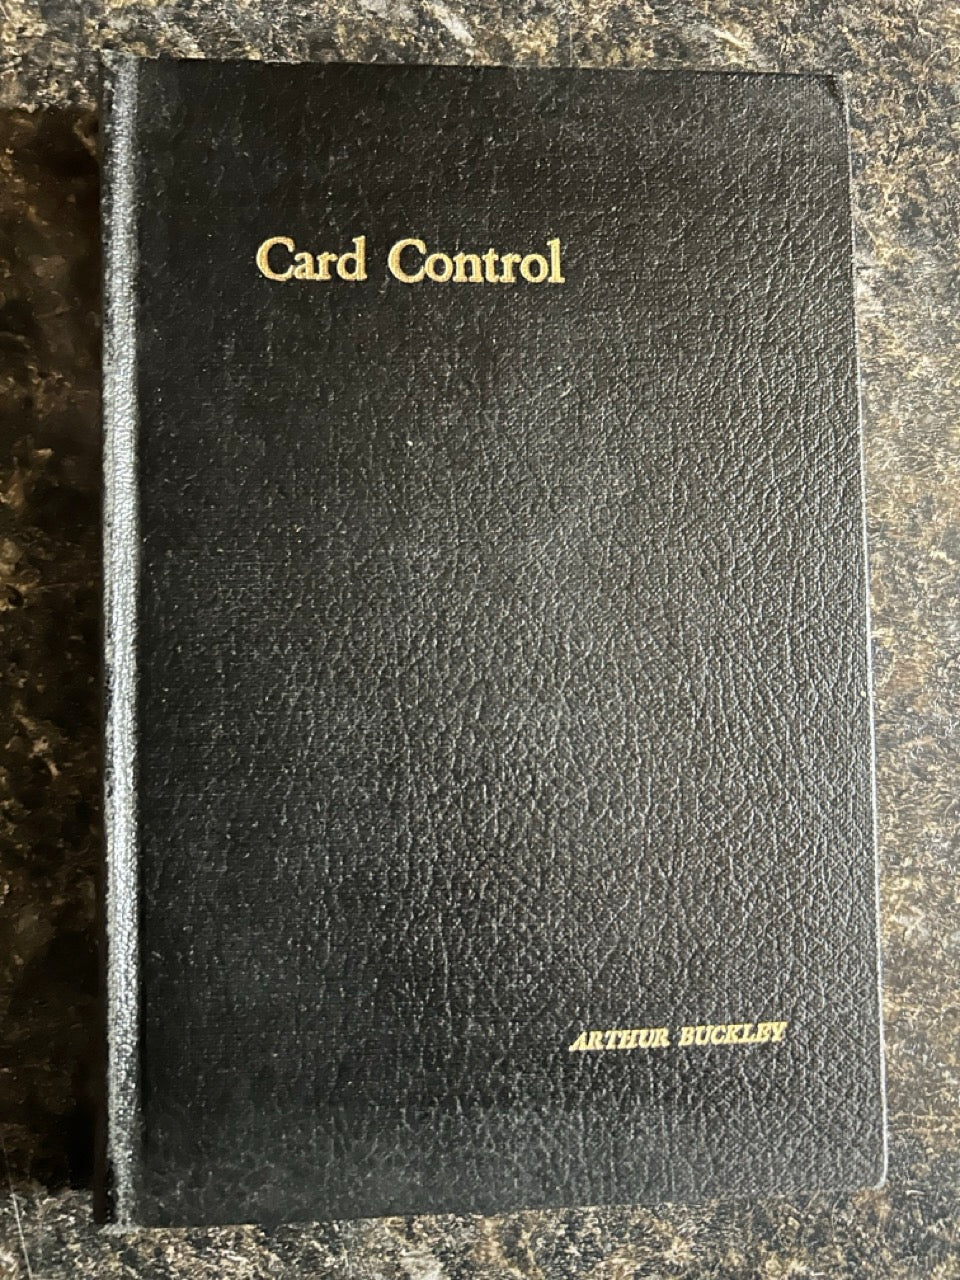 Card Control - Arthur Buckley (1st edition)